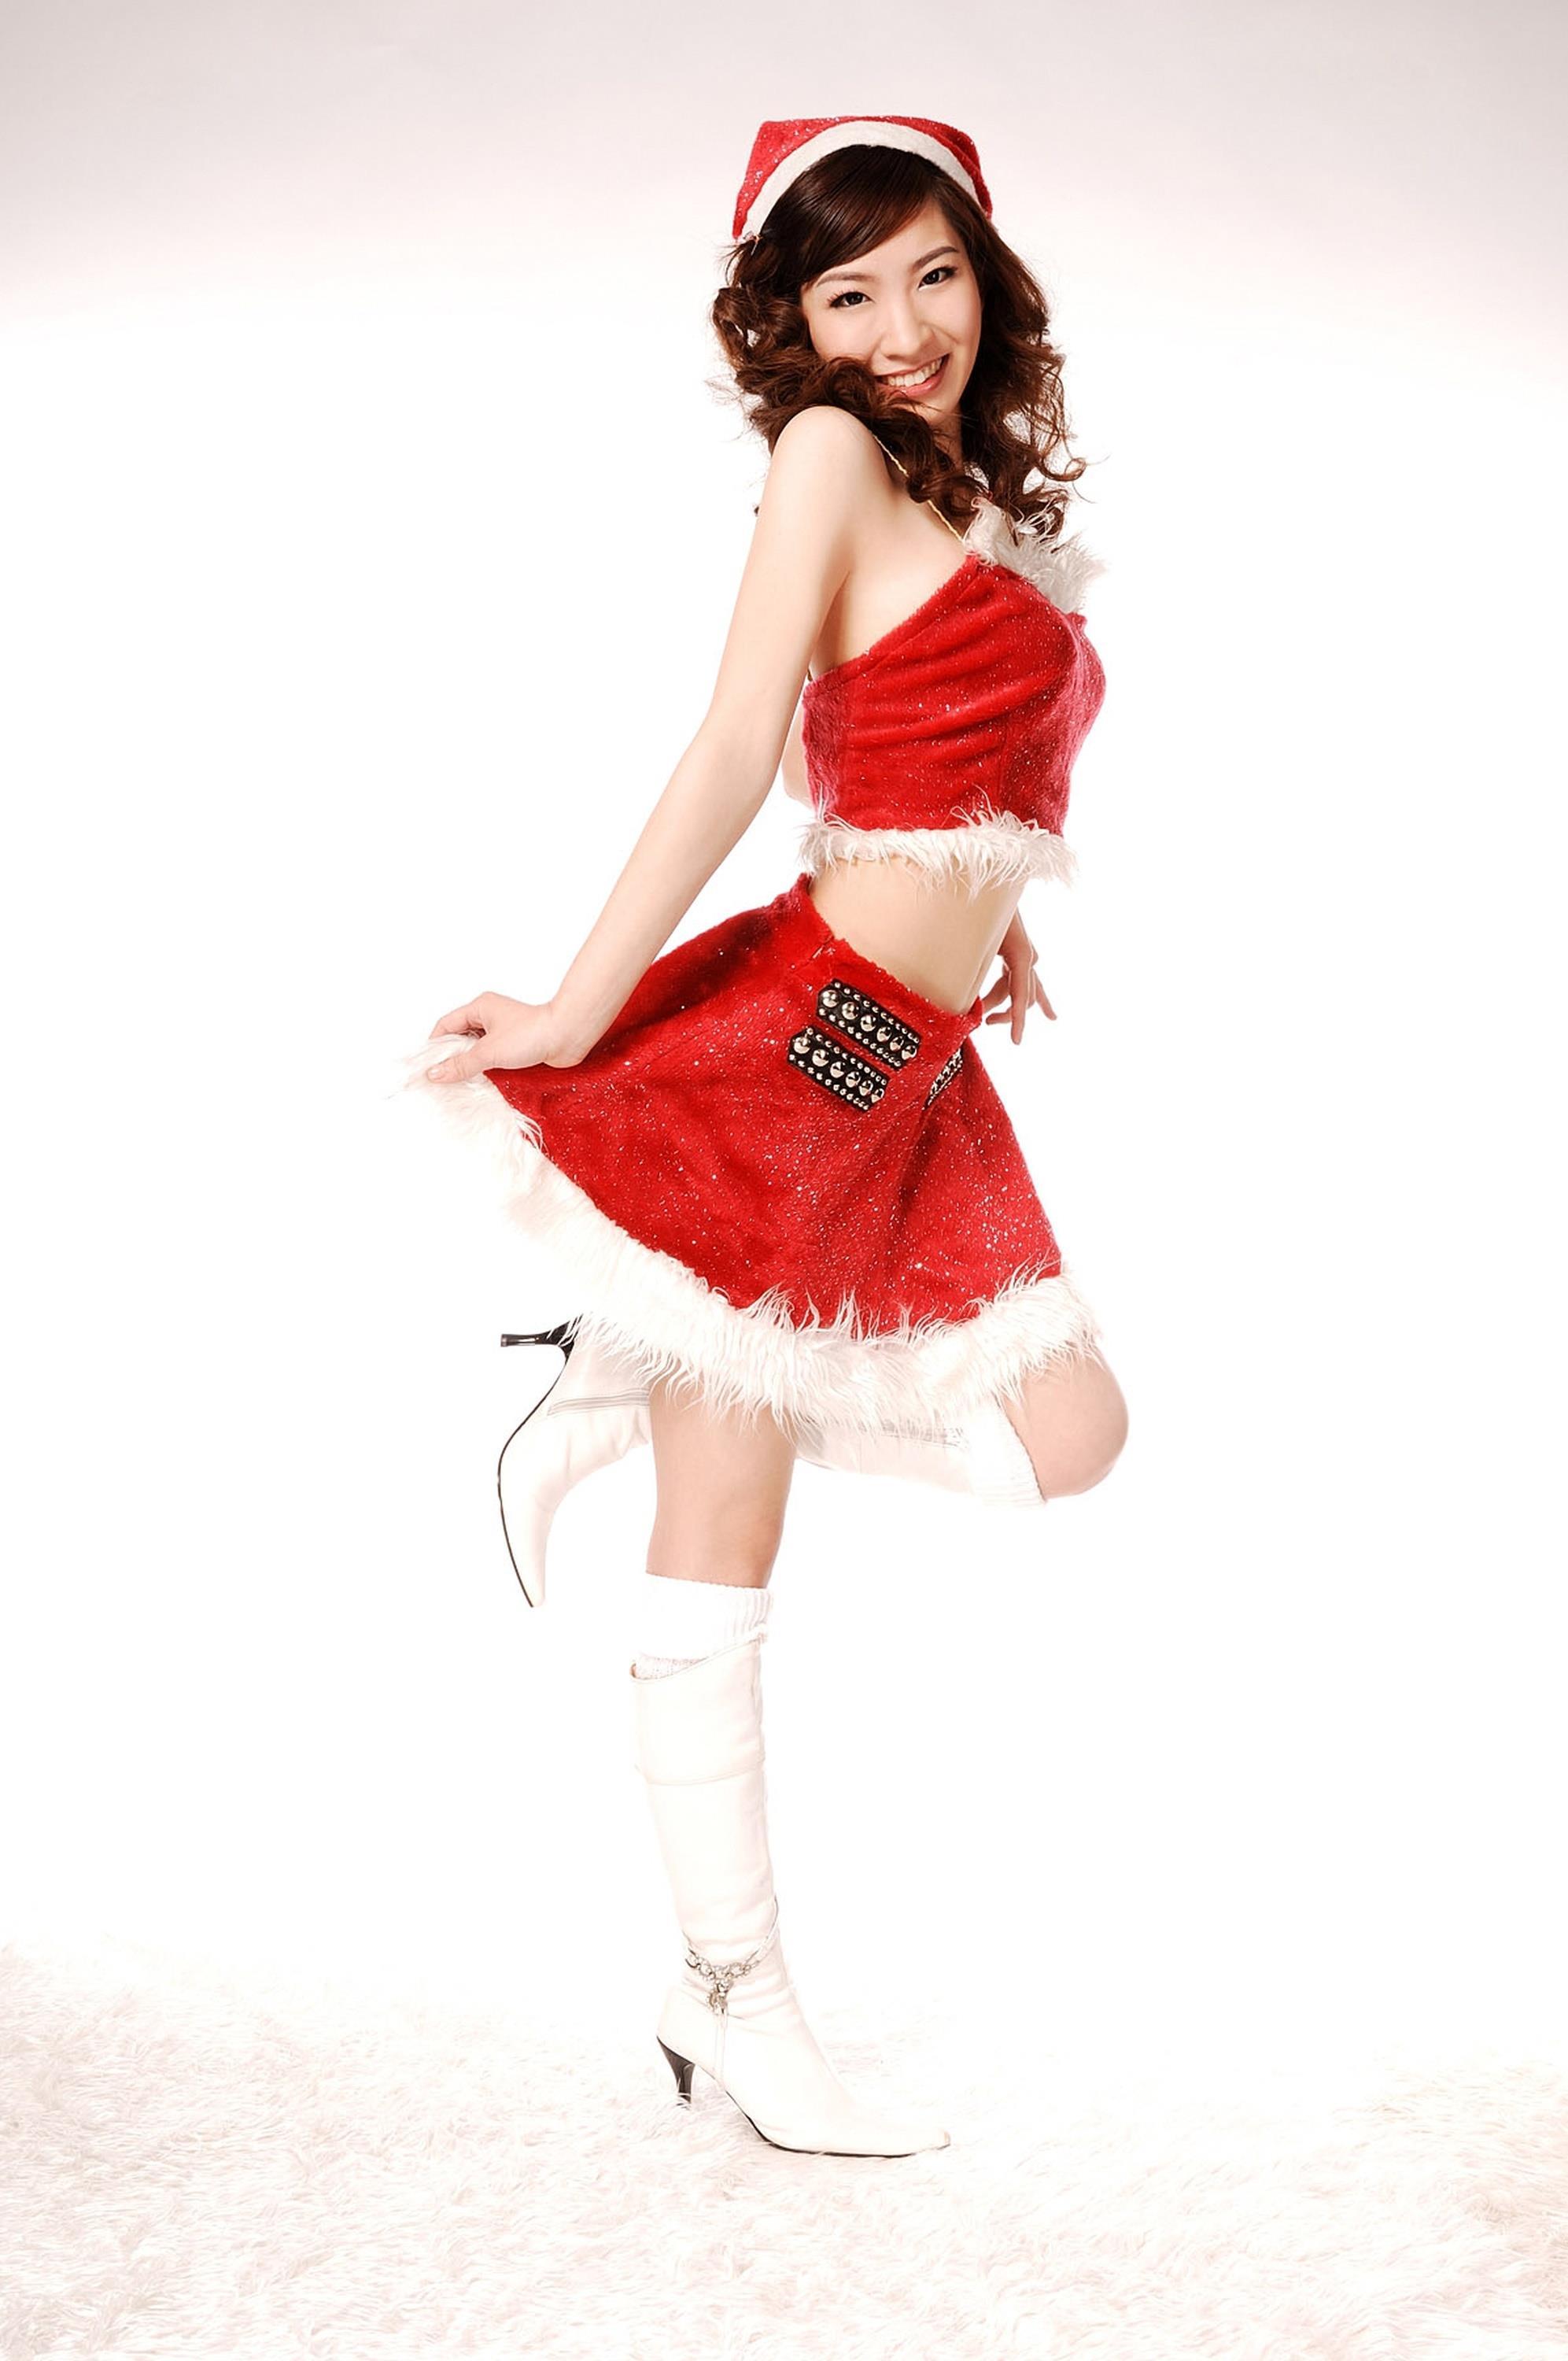 [Ligui丽柜会所]2018-04-02 Model 小雪 红色圣诞女郎制服与性感美腿玉足私房写真集,